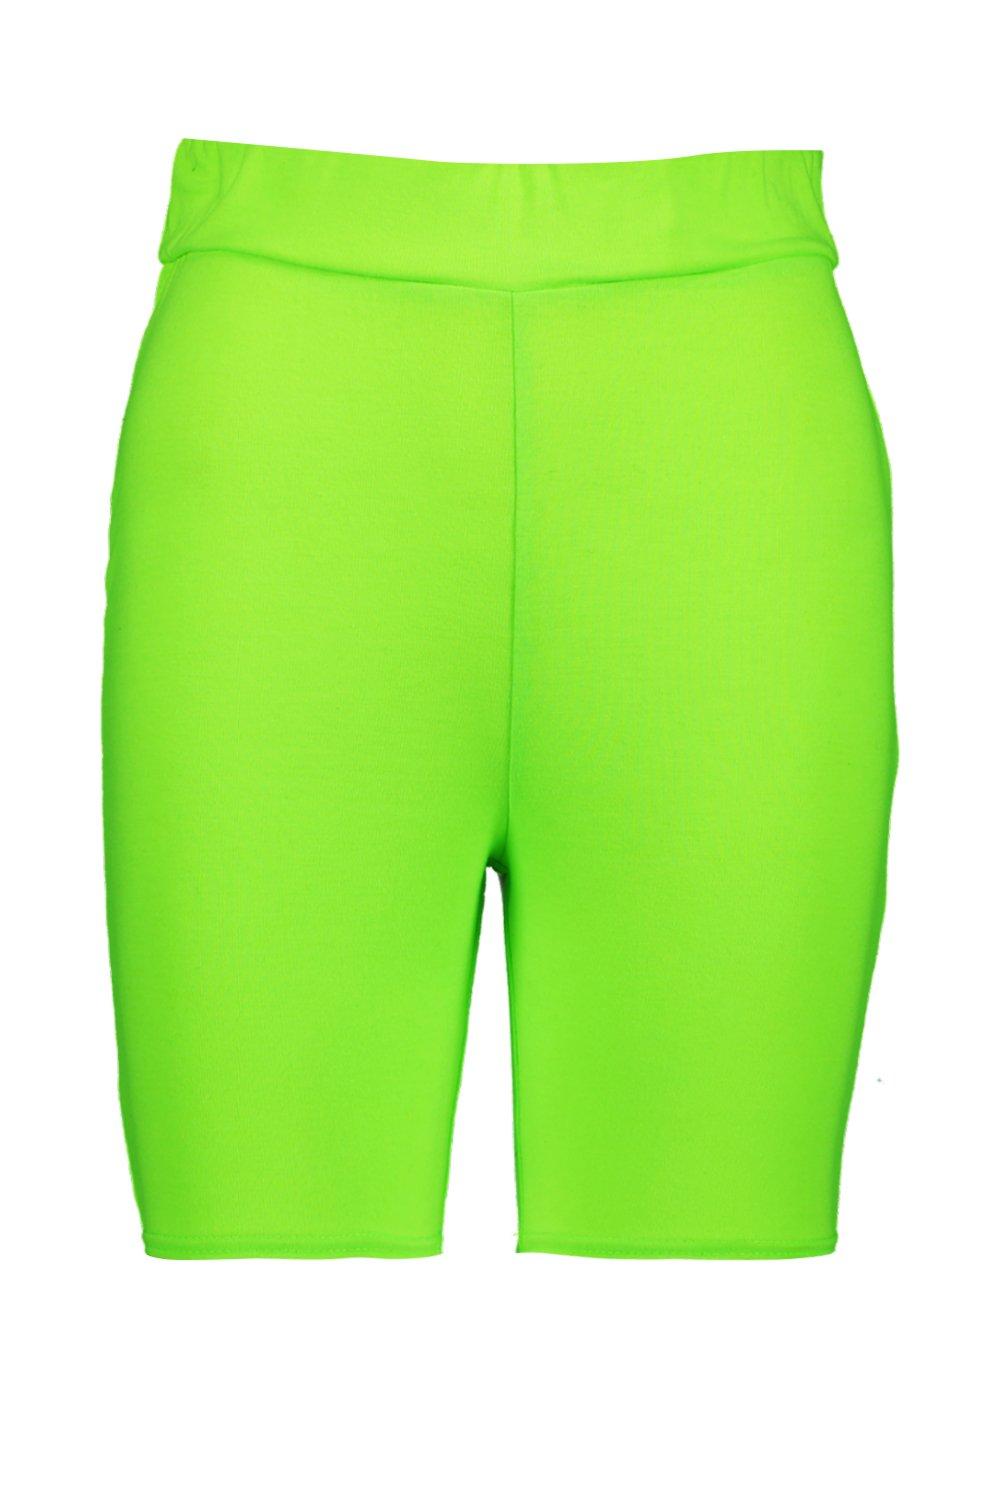 green cycling shorts